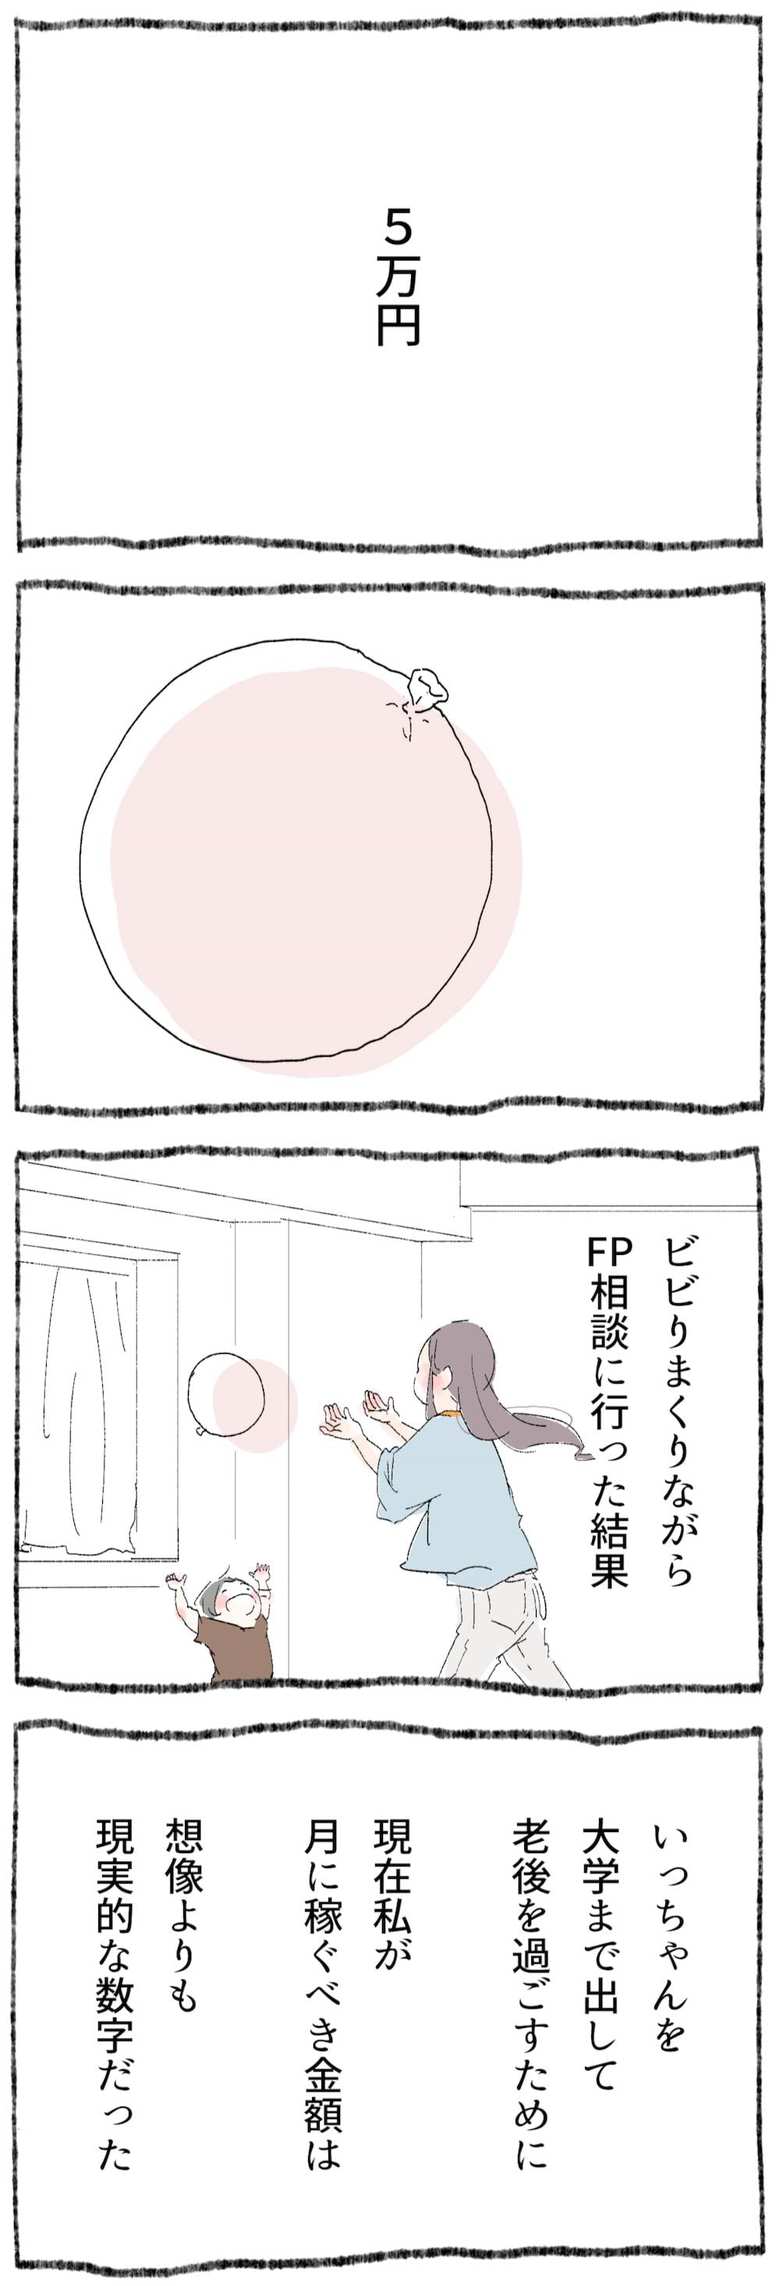 漫画「ひとづきあい練習帳」14話1p